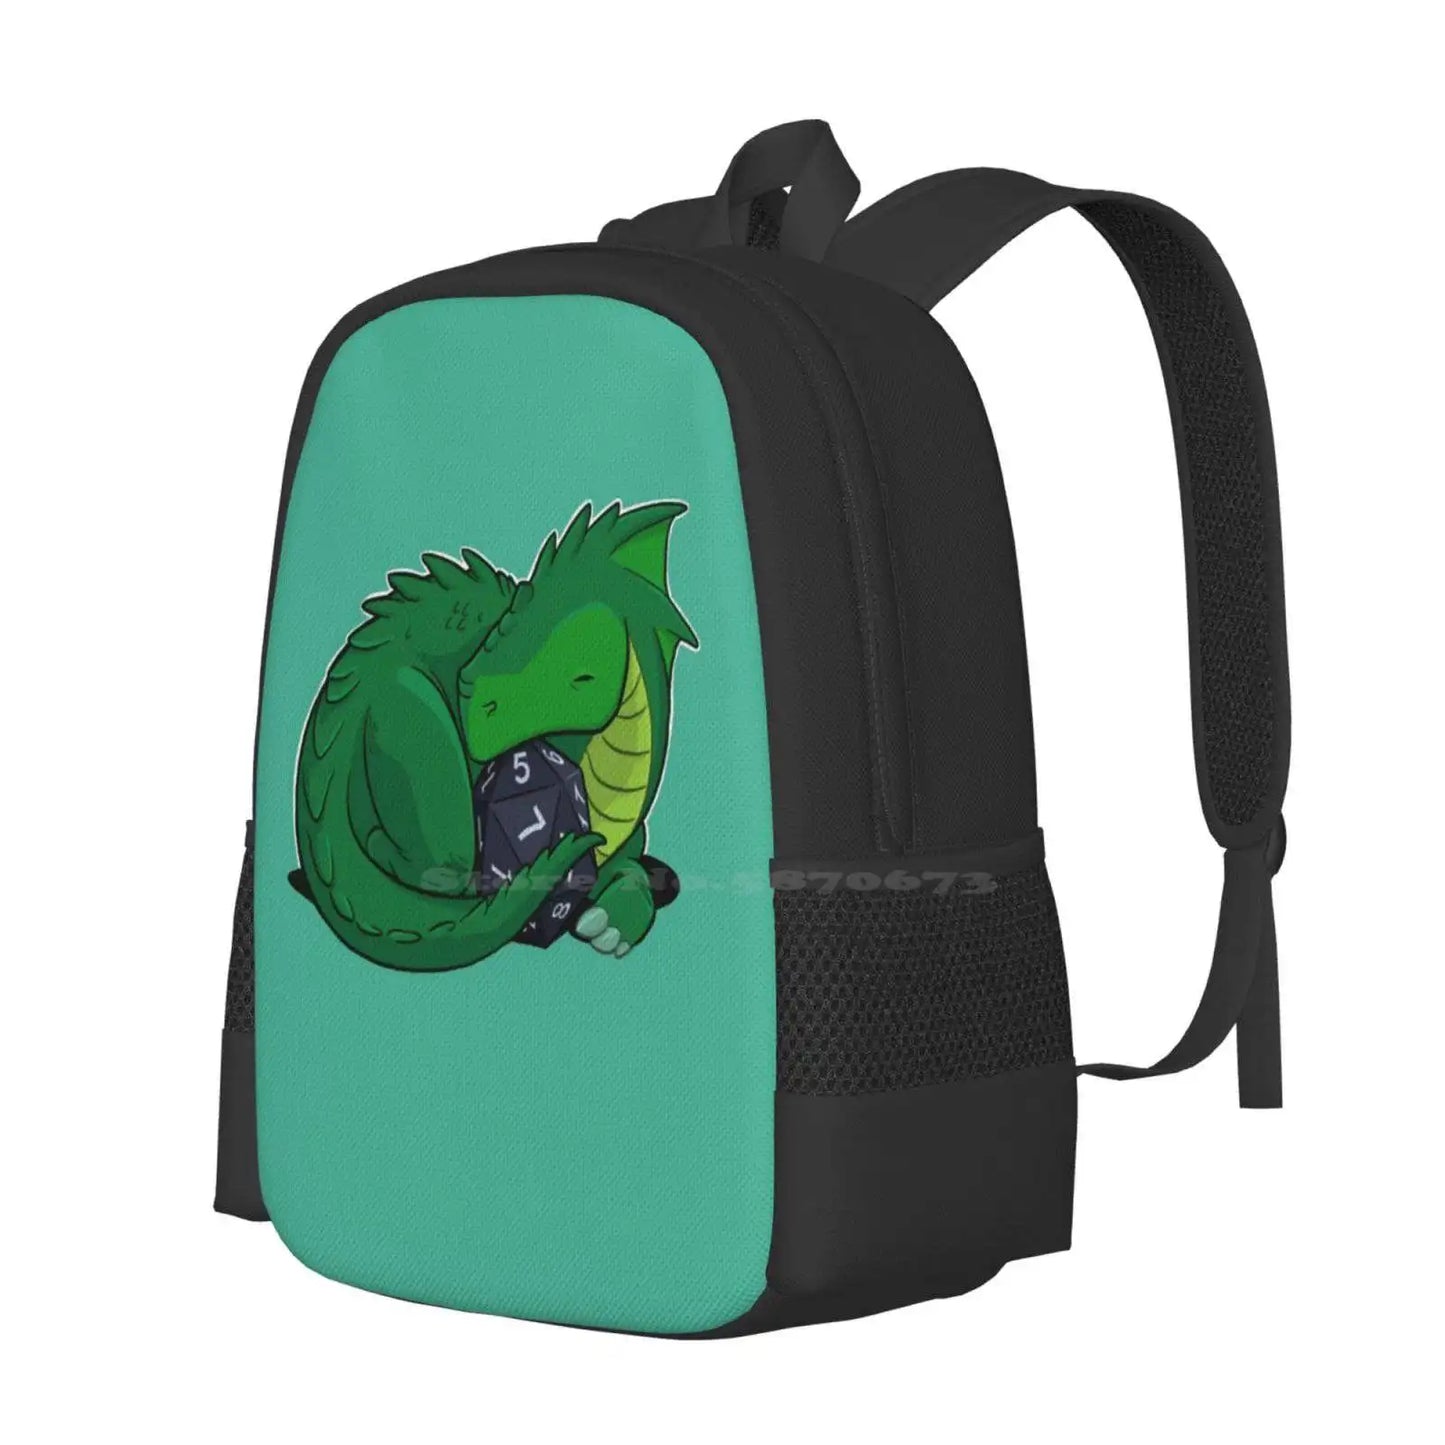 Mochila D20 Dragón Verde para estudiante, escuela, portátil, bolsa de viaje, campaña de bebé dragón, dibujos animados, criatura de cómics, dados D20 Dnd